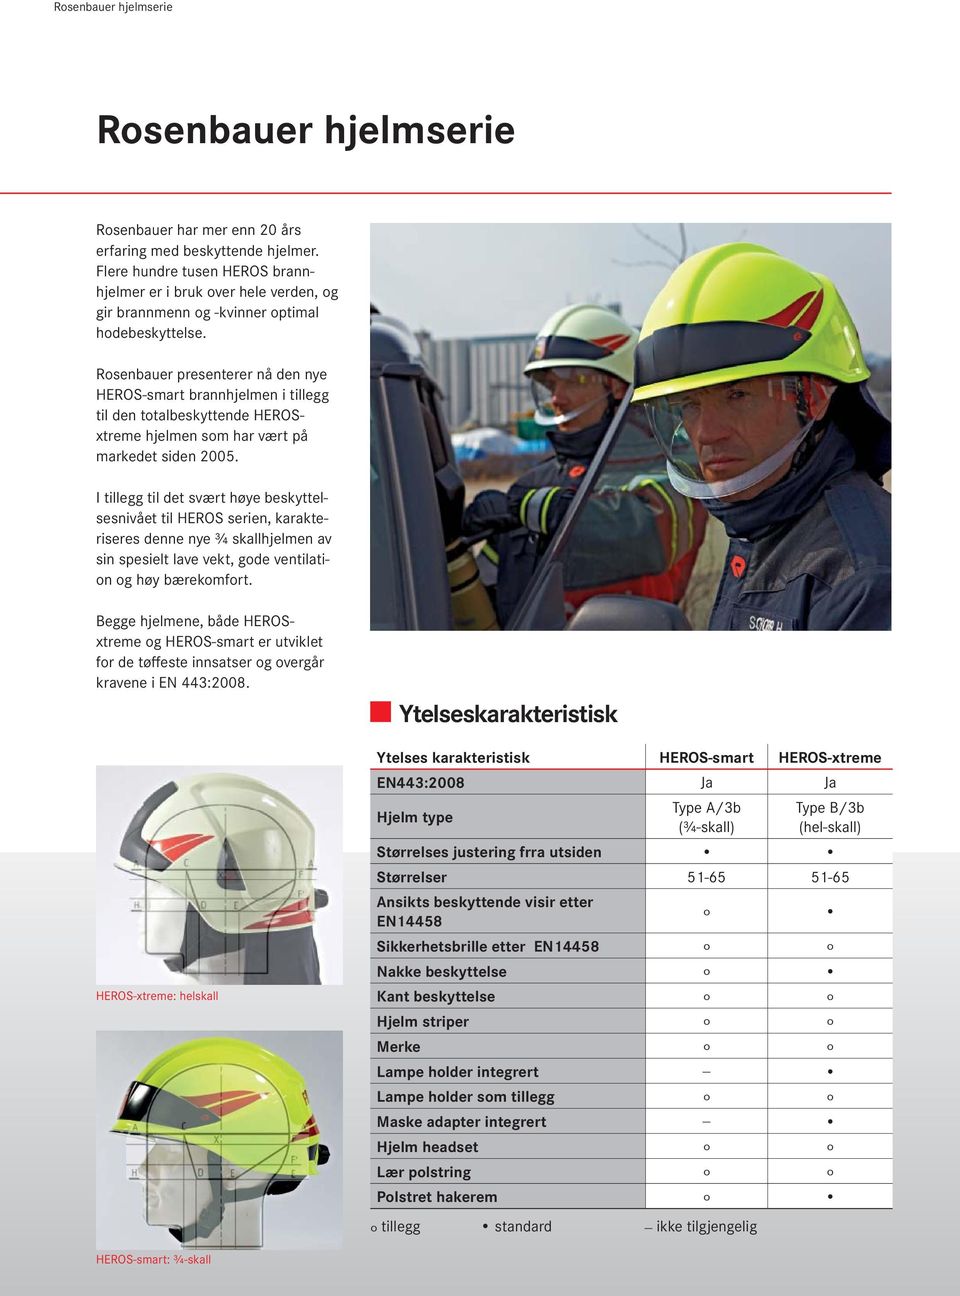 Rosenbauer presenterer nå den nye HEROS-smart brannhjelmen i tillegg til den totalbeskyttende HEROSxtreme hjelmen som har vært på markedet siden 2005.